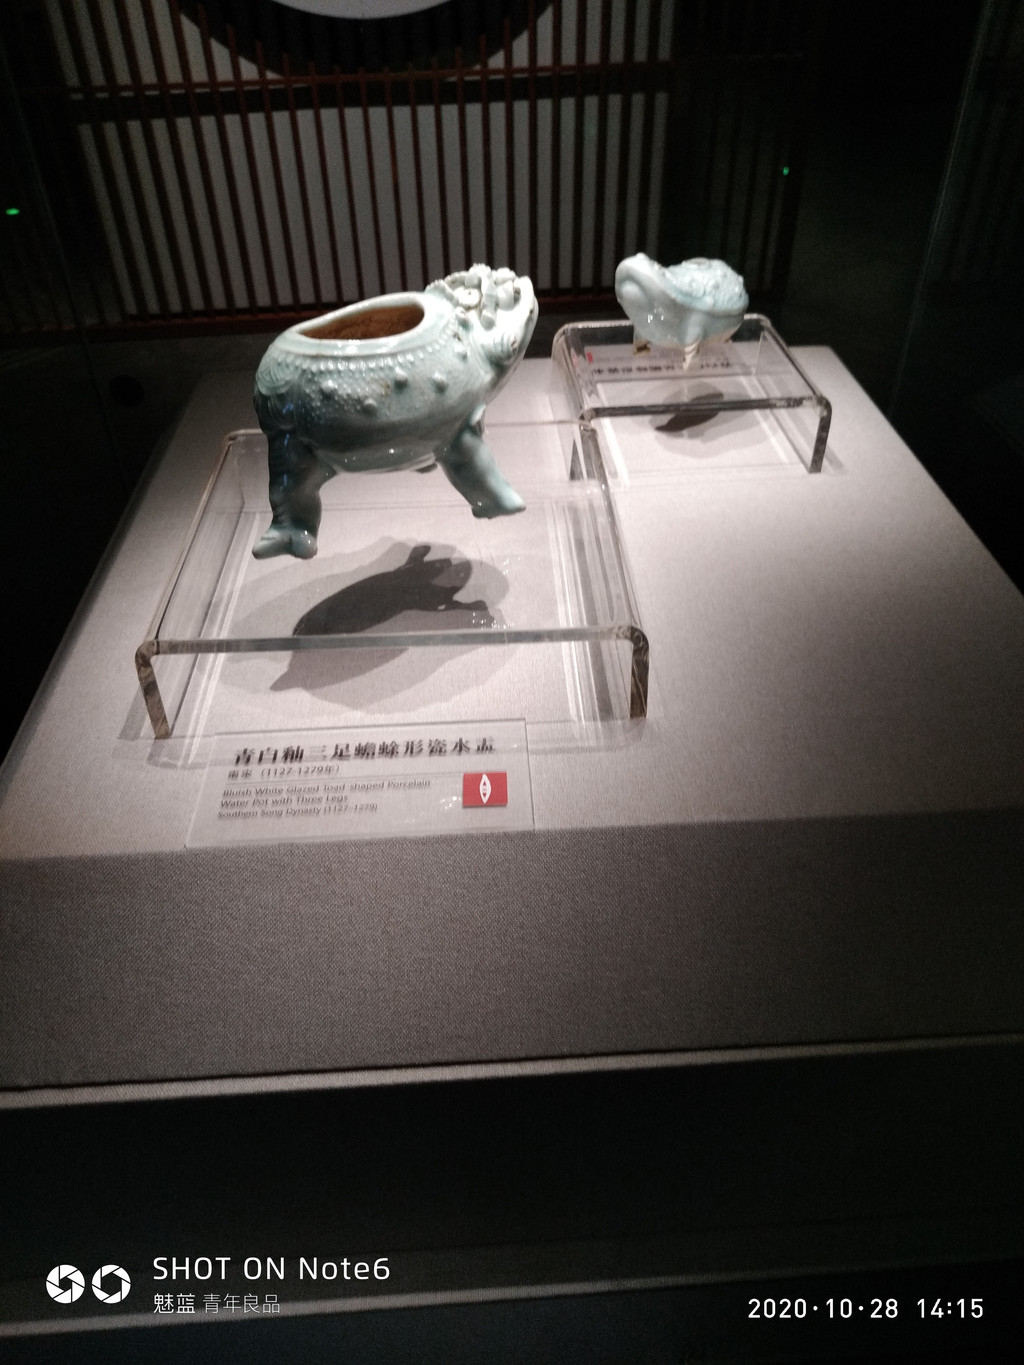 四川宋瓷博物馆